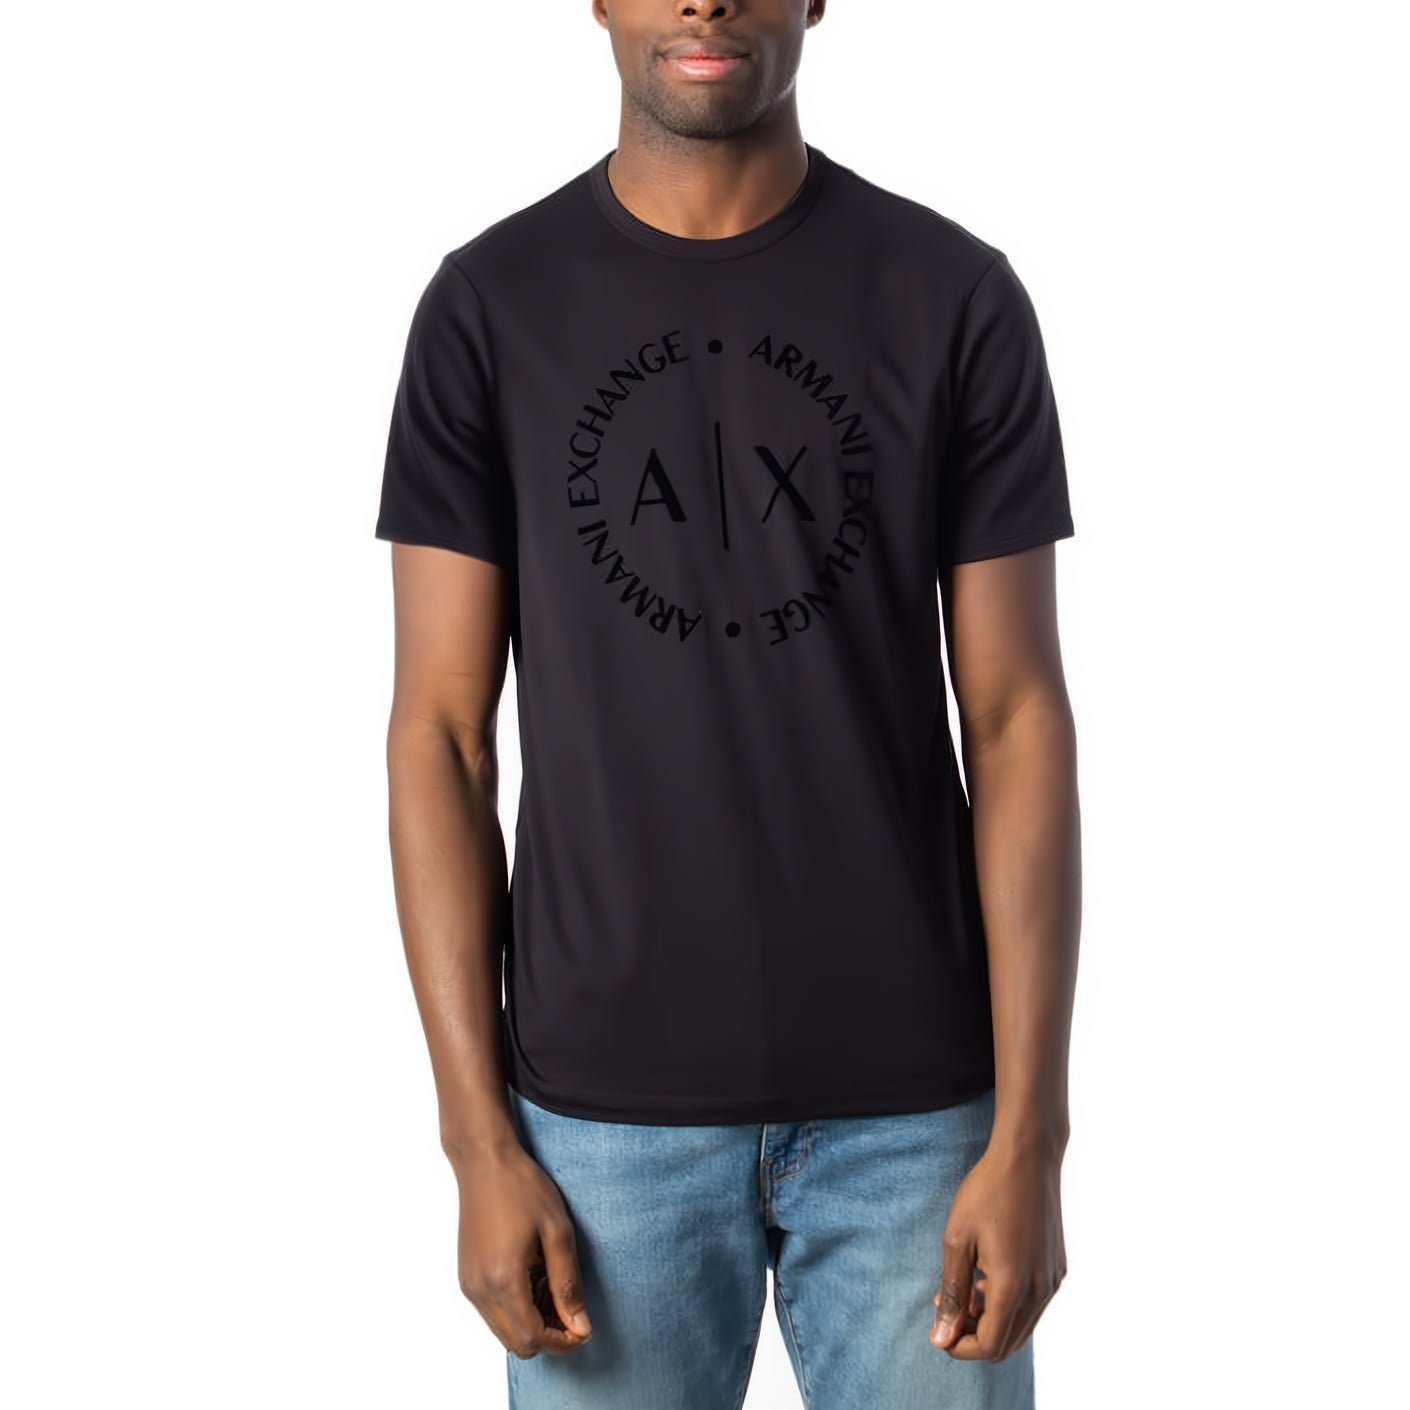 ARMANI EXCHANGE T-Shirt kurzarm, Rundhals, ein Must-Have für Ihre Kleidungskollektion!